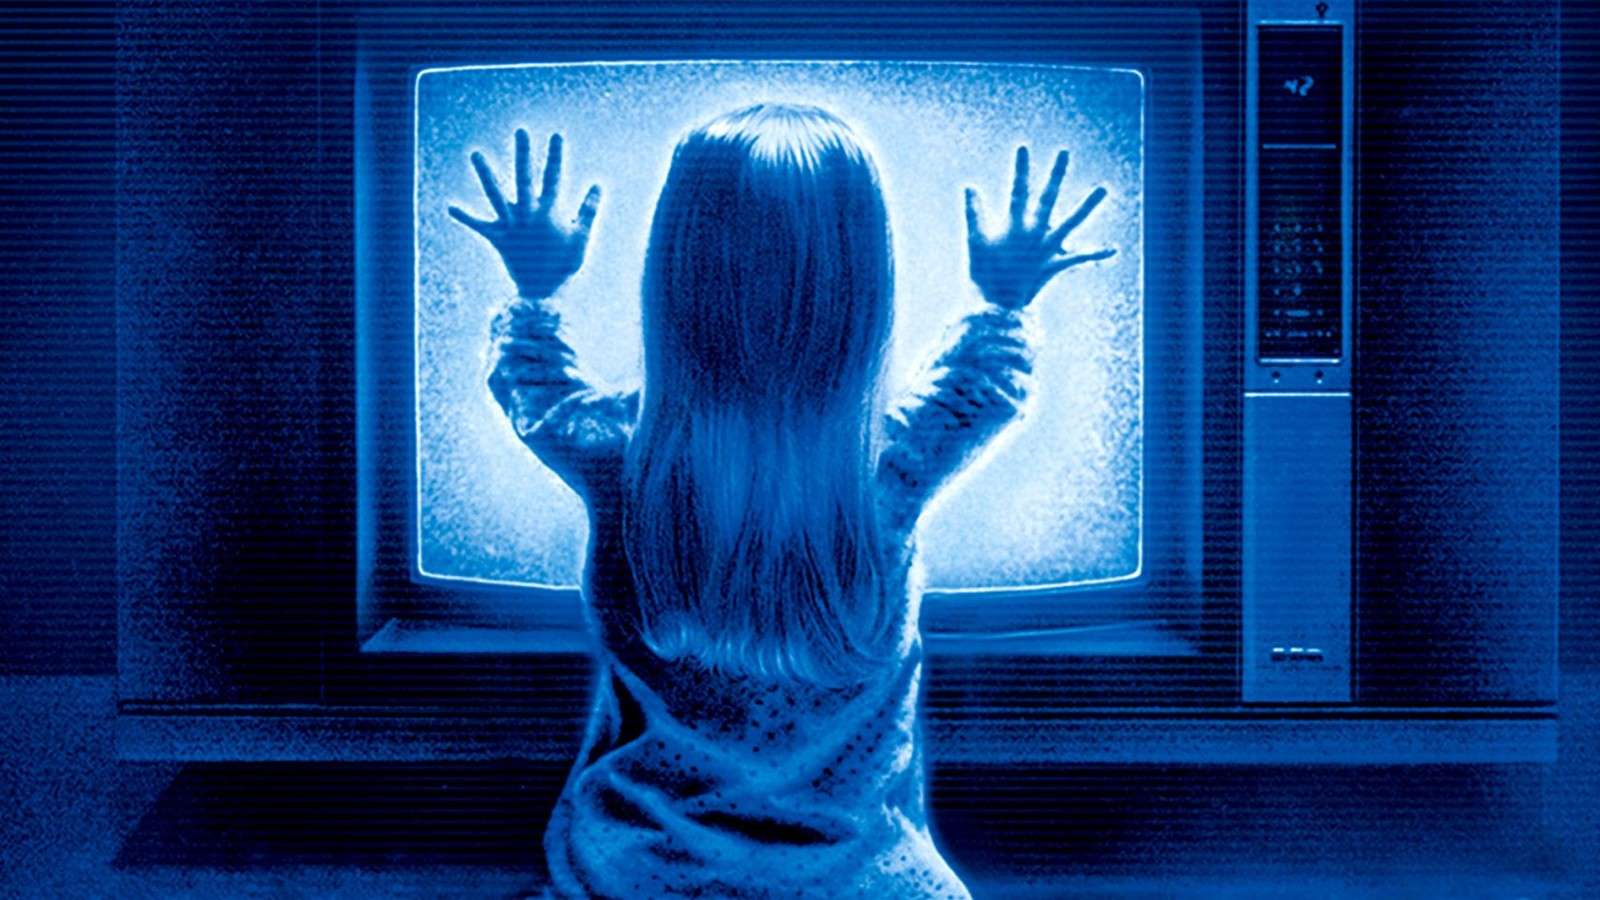 Kid touches TV in Poltergeist.